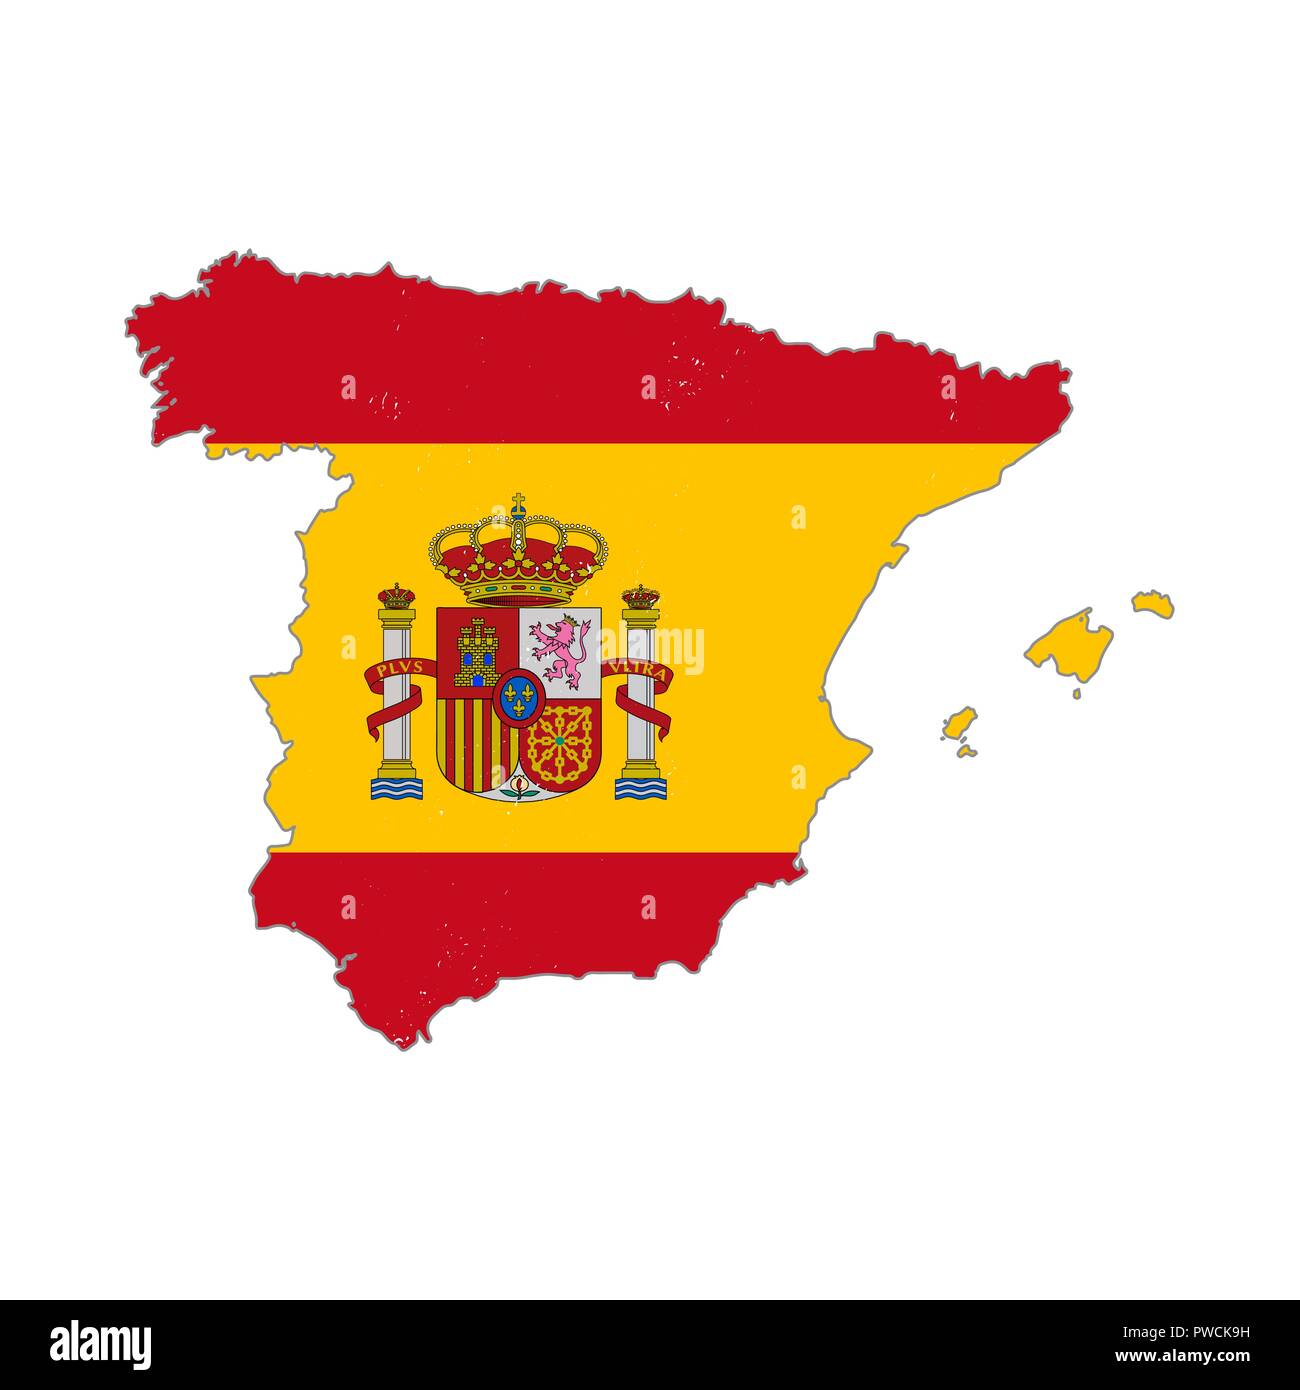 Spanien Land Silhouette mit Flagge auf weißem Hintergrund  Stock-Vektorgrafik - Alamy